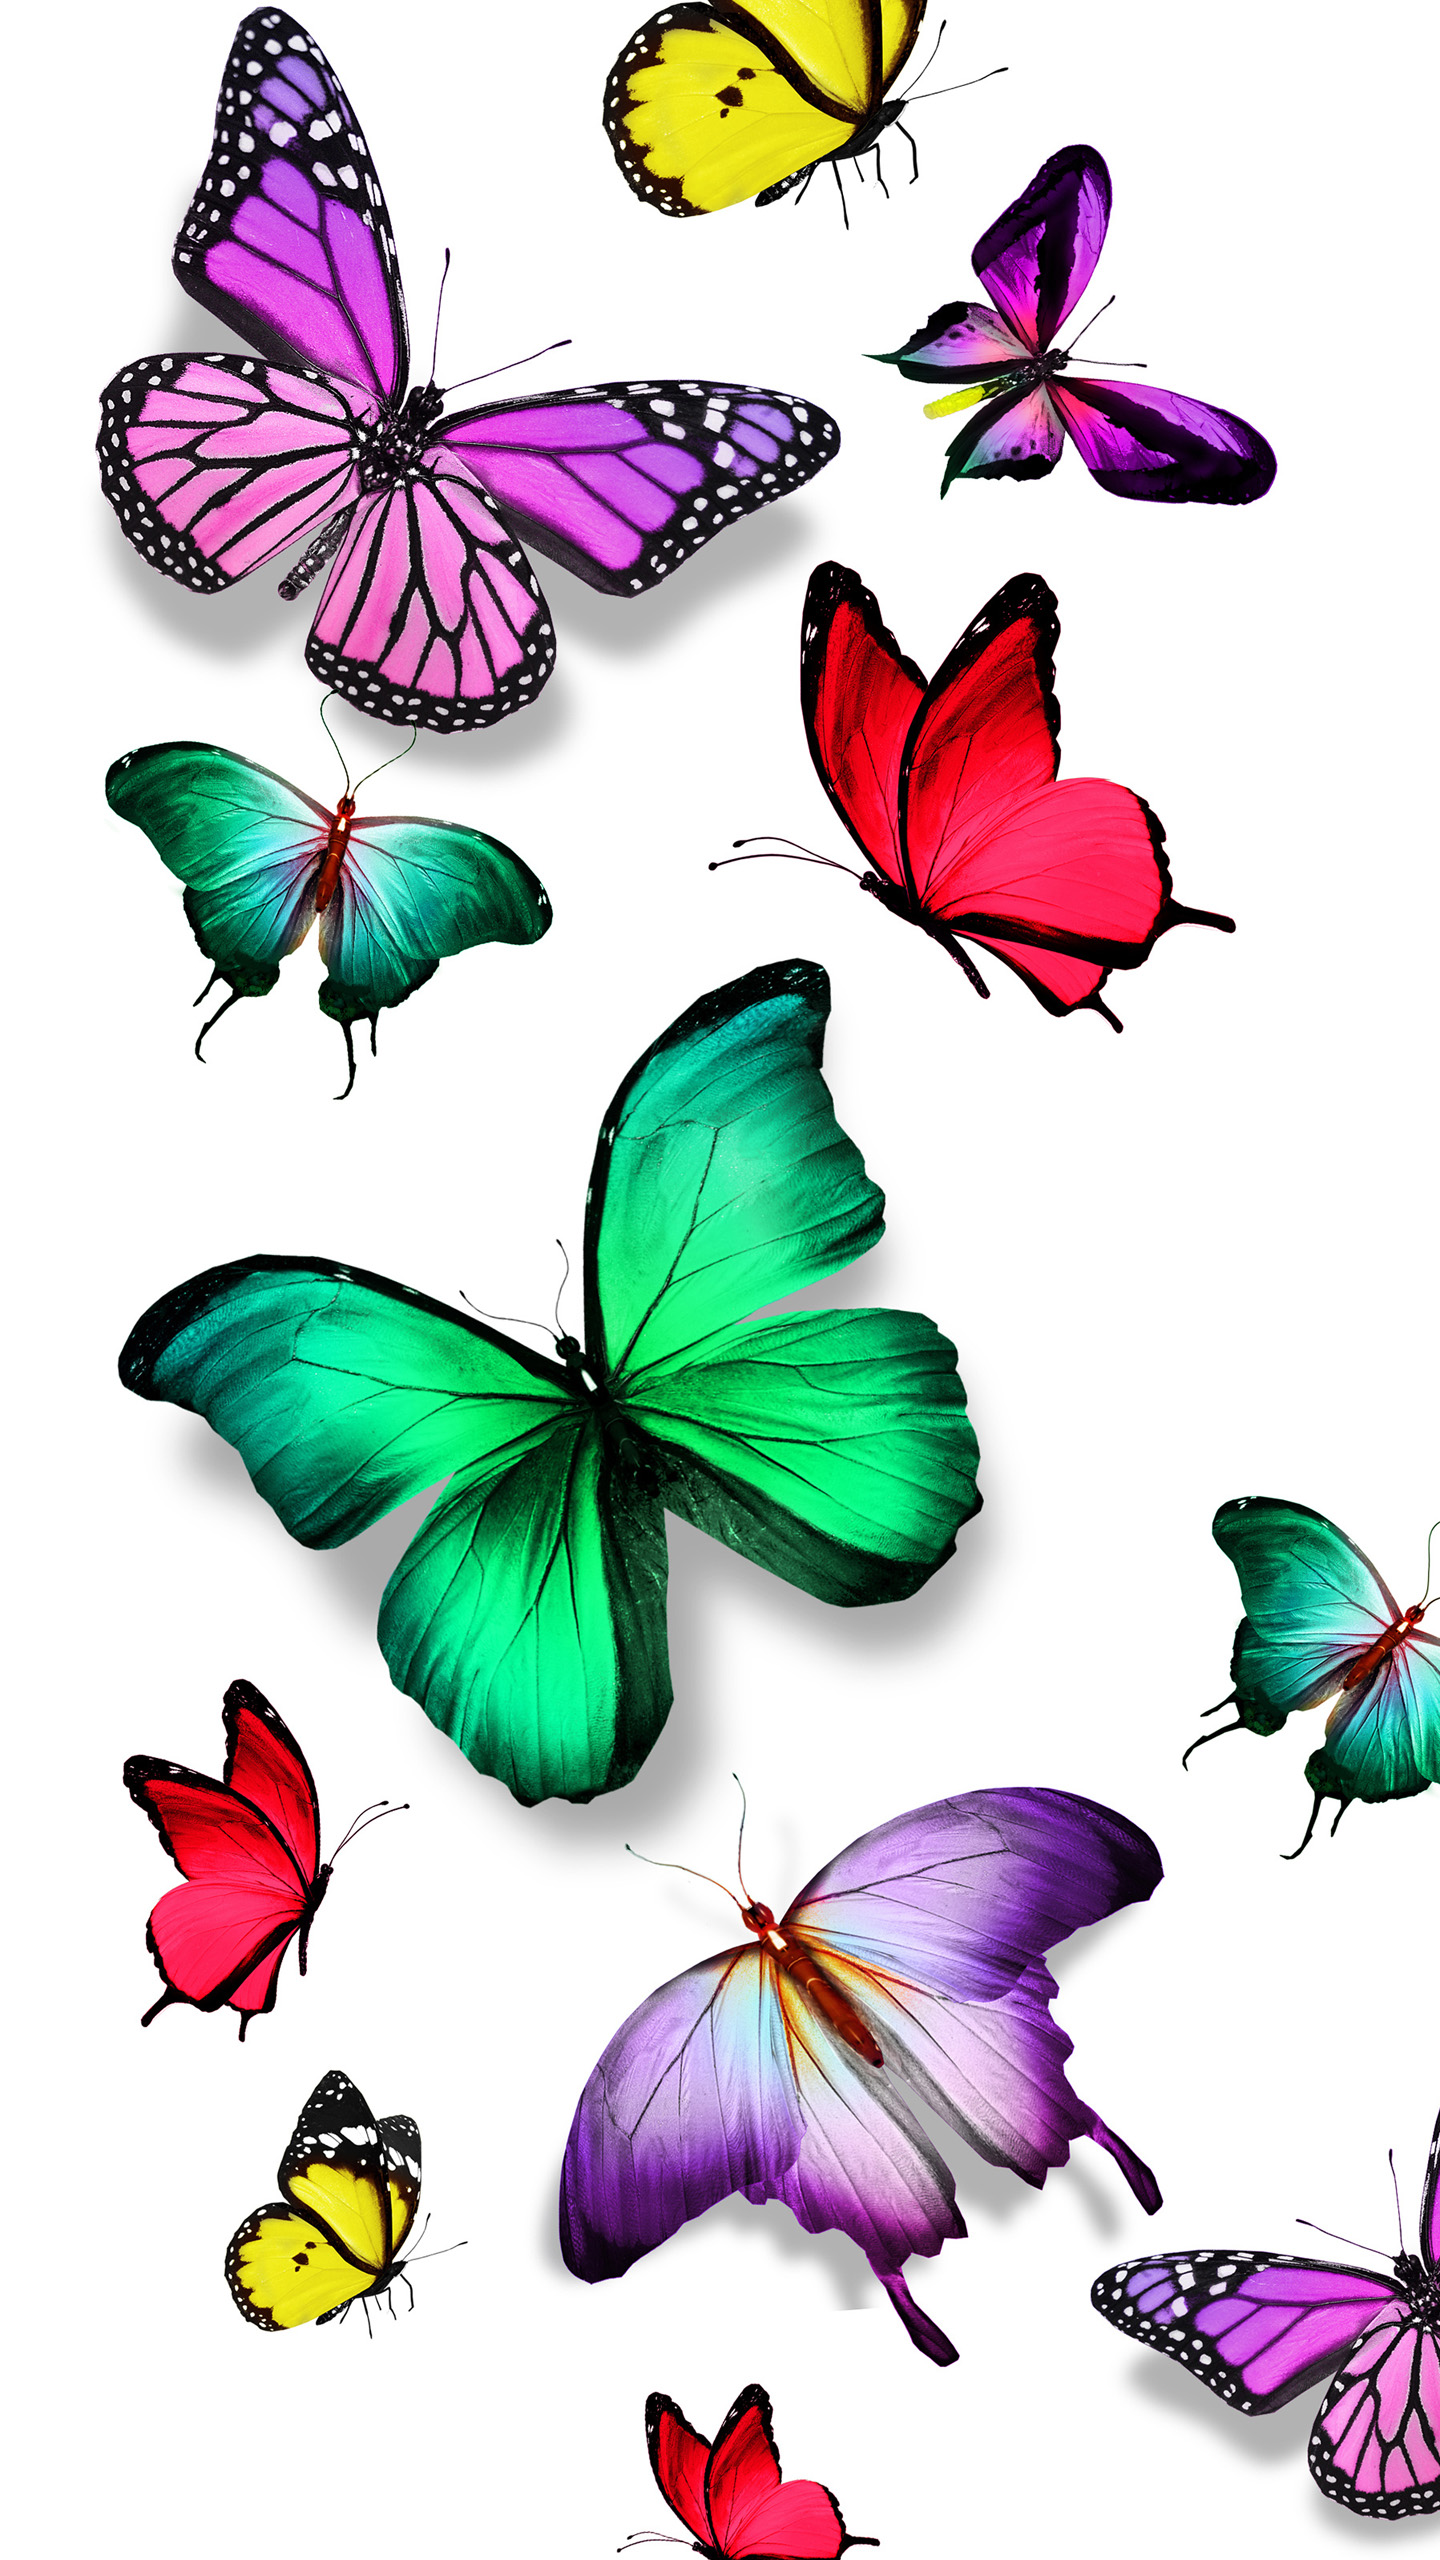 カラフルな蝶の壁紙,バタフライ,昆虫,蛾と蝶,クリップ・アート,無脊椎動物